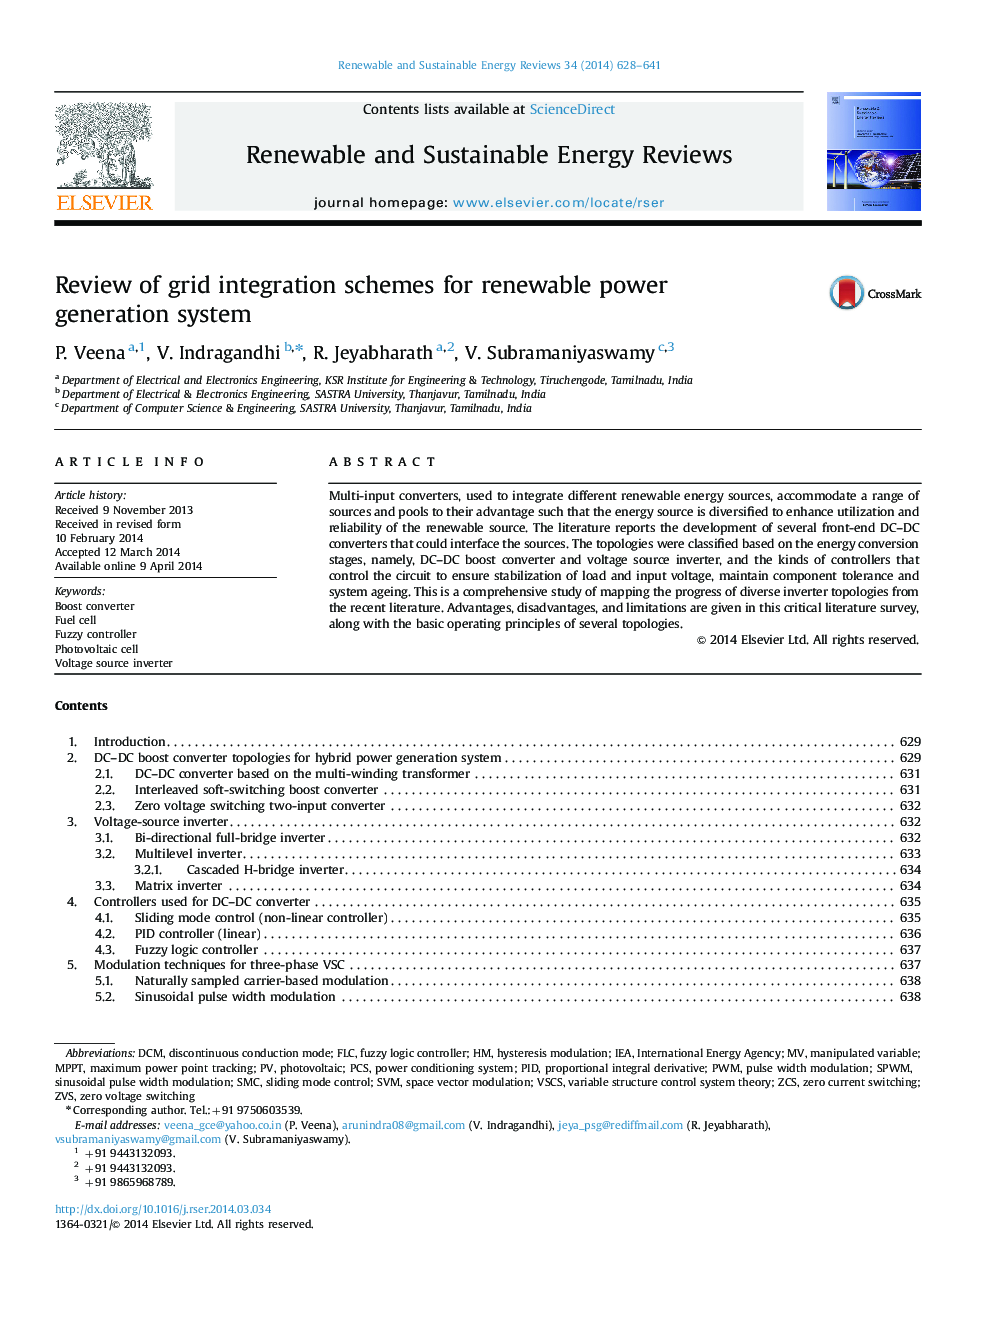 بررسی طرح های یکپارچه شبکه برای سیستم تولید برق تجدید پذیر 